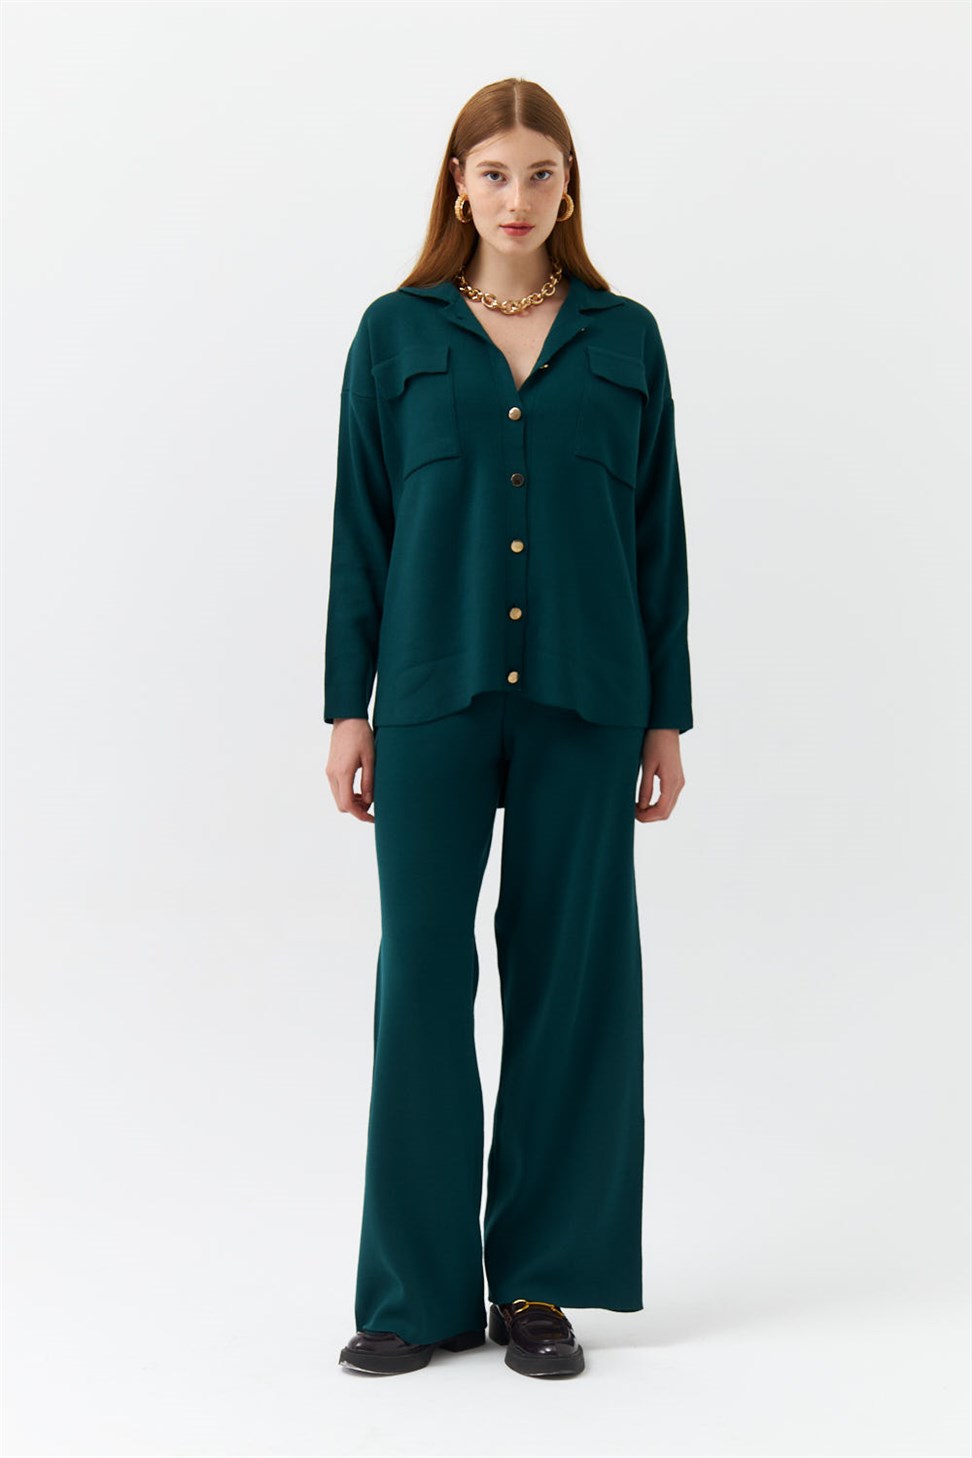 Shirt Collar Pocket Knitwear Emerald Green Womens Suit